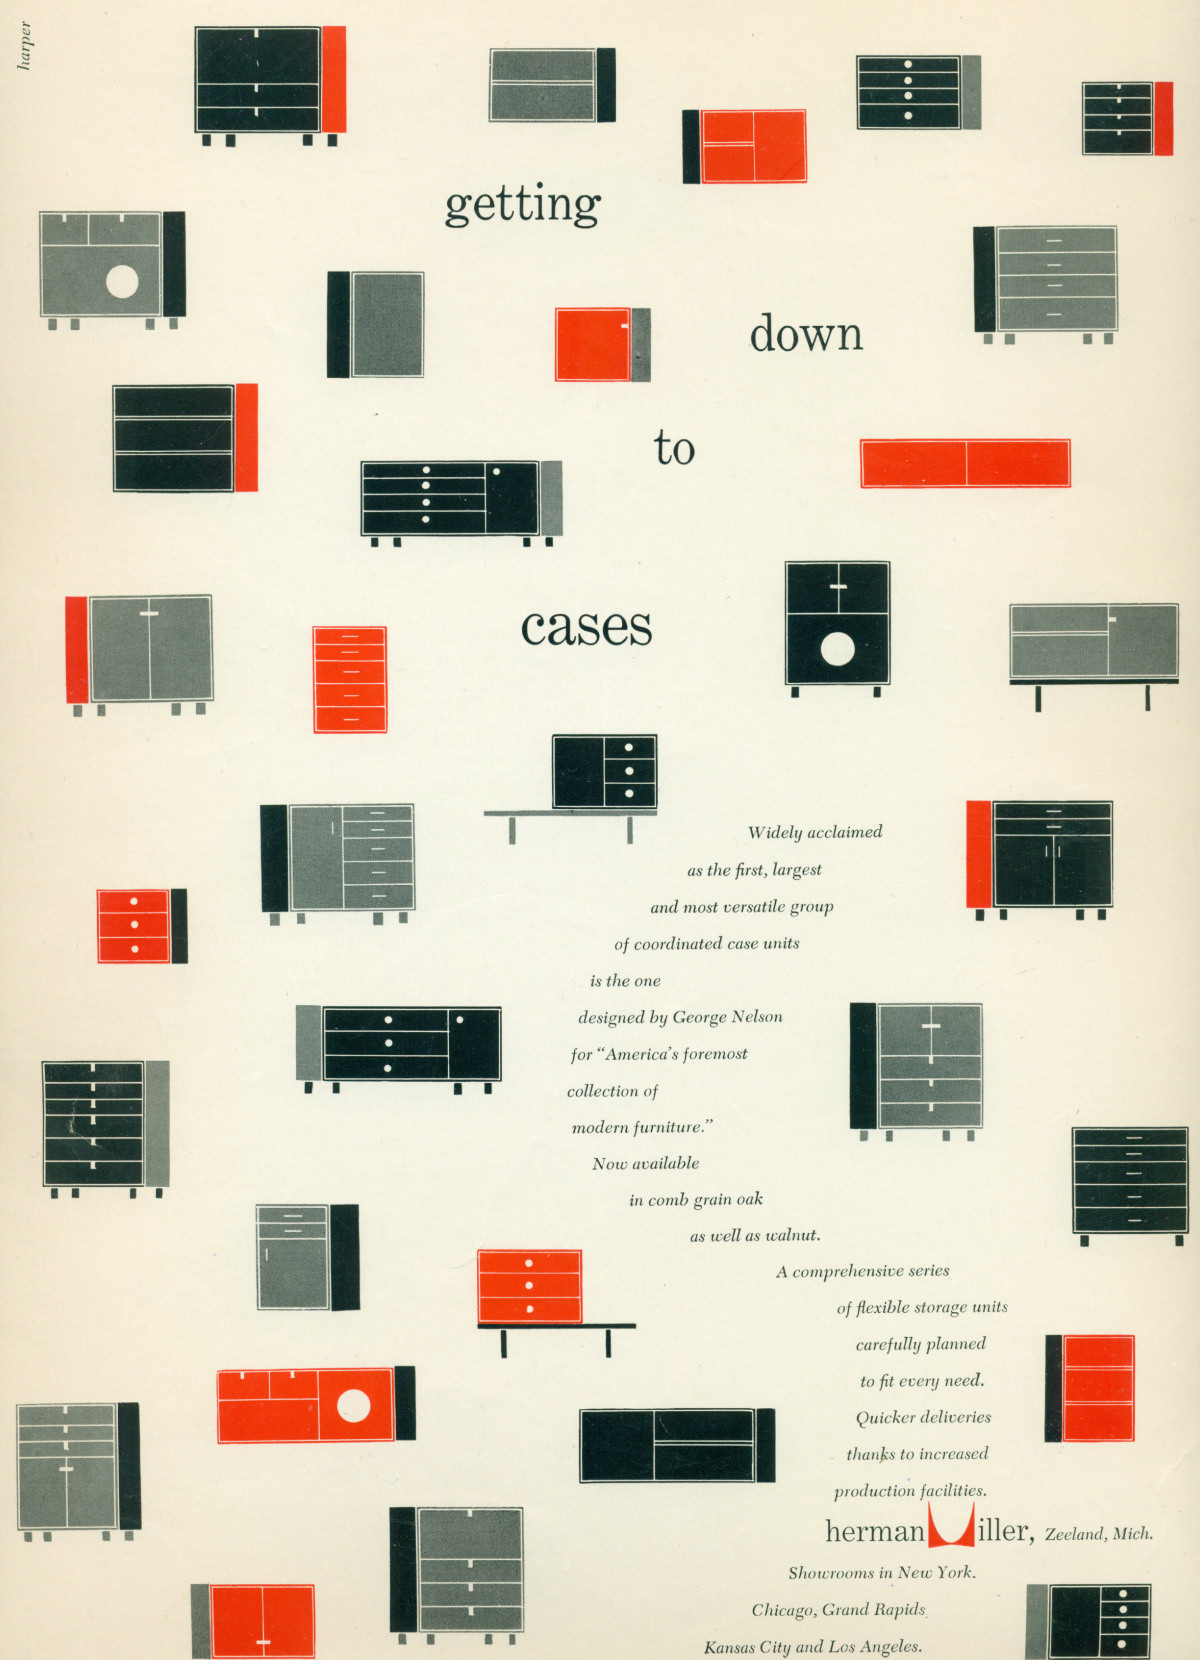 ネルソンベーシックキャビネットシリーズを様々に組み合わせた赤、黒、グレーのグラフィックレンダリングが、広告に掲載された宣伝用テキストの周りを囲んでいる